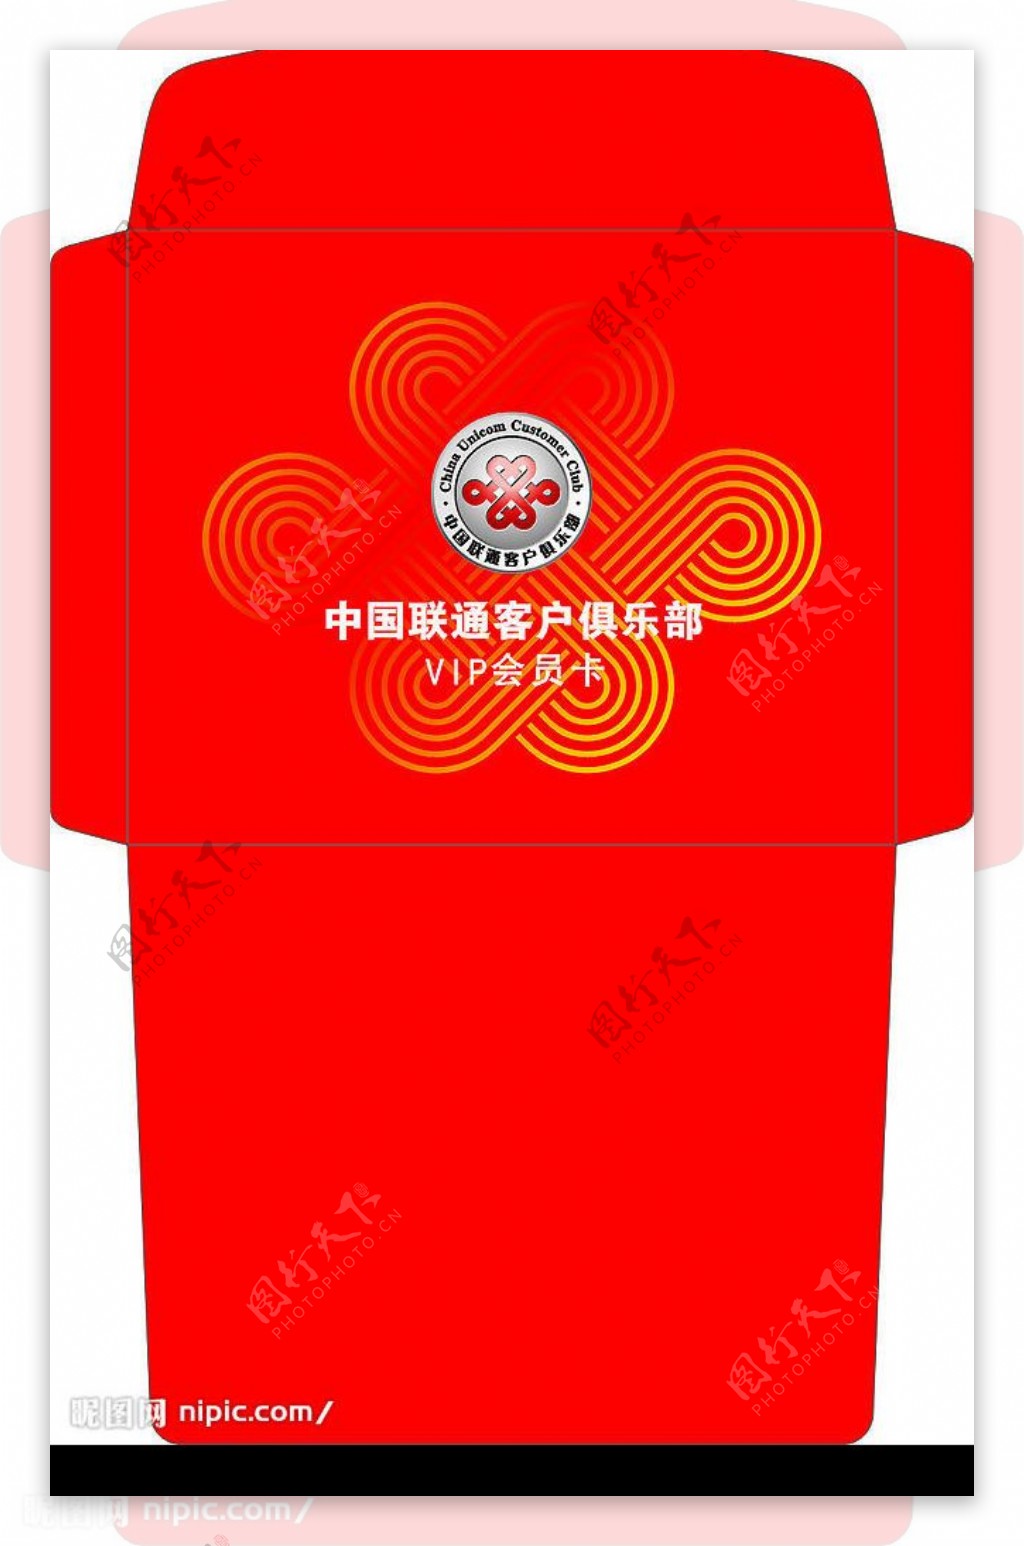 中国联通客户俱乐部VIP卡袋图片